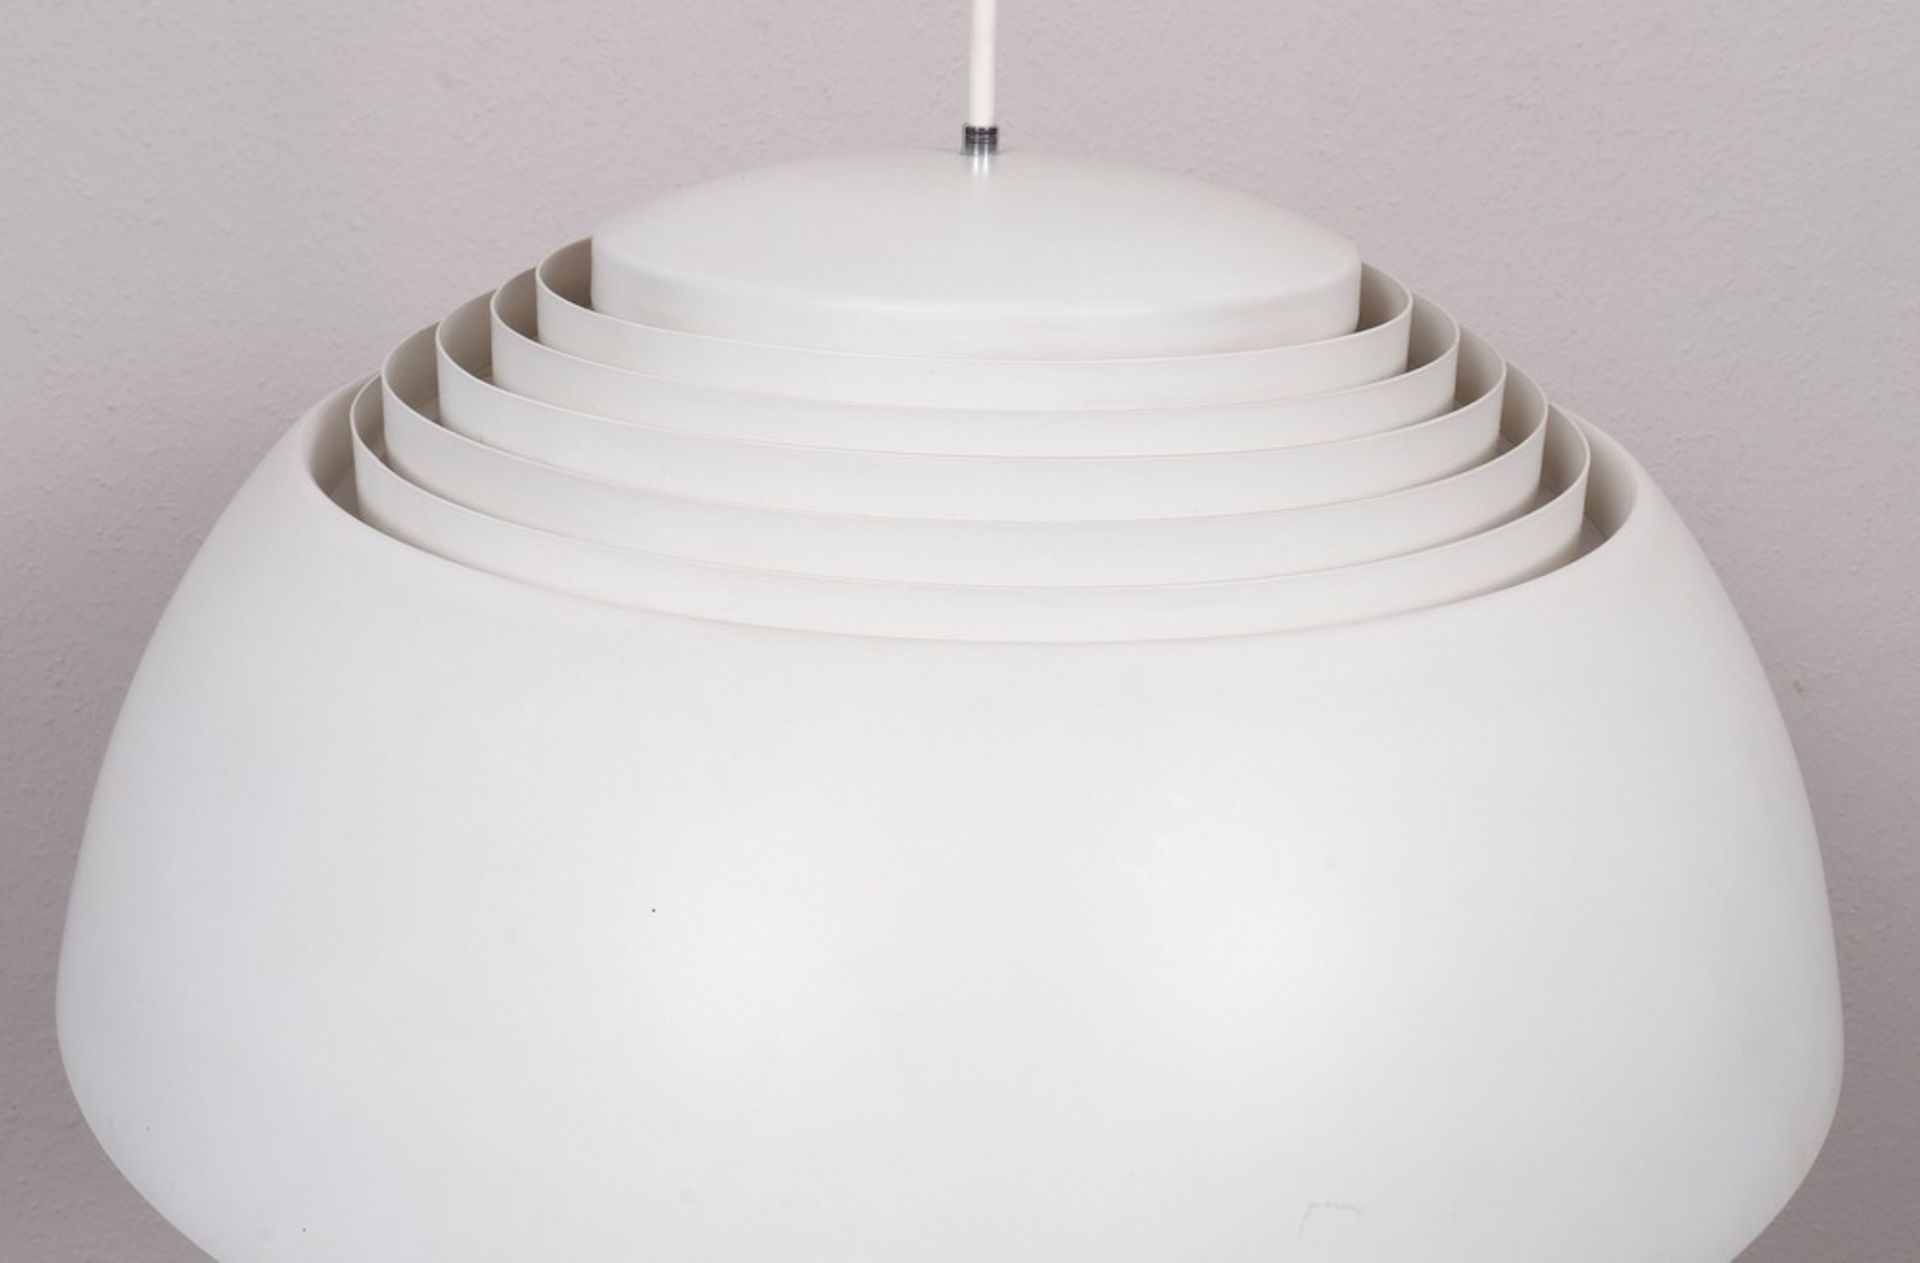 Pendant light design Arne Jacobsen for Louis Poulsen, 20th C. - Image 2 of 3